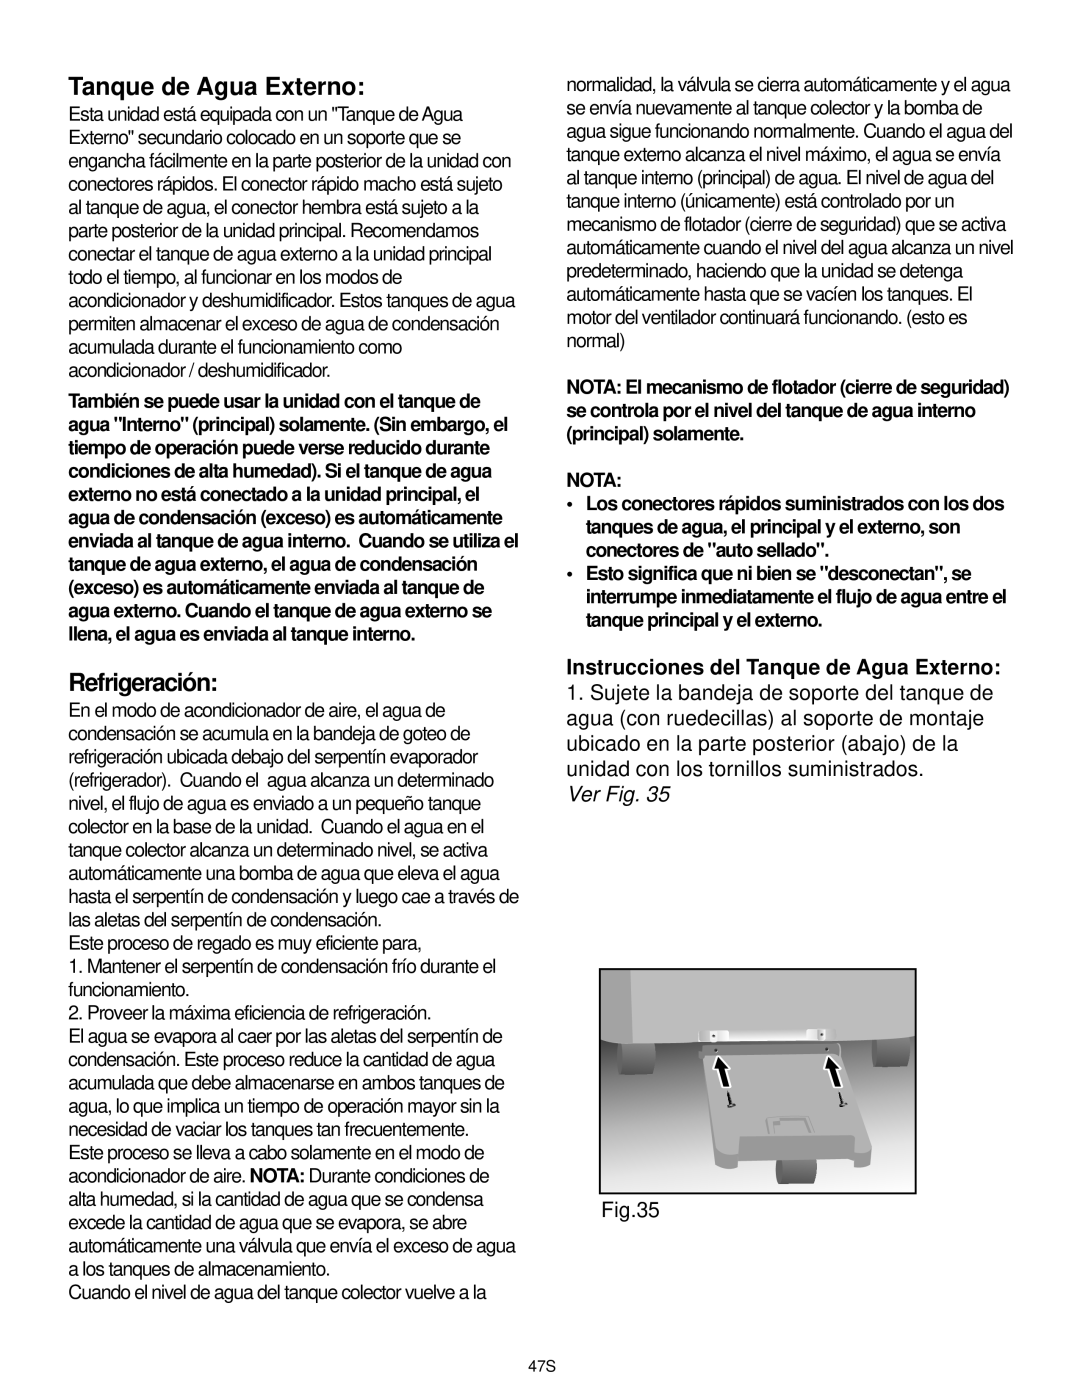 Danby DPAC9030, DCAP 12030 manual Refrigeración, Instrucciones del Tanque de Agua Externo, Ver Fig, Nota 